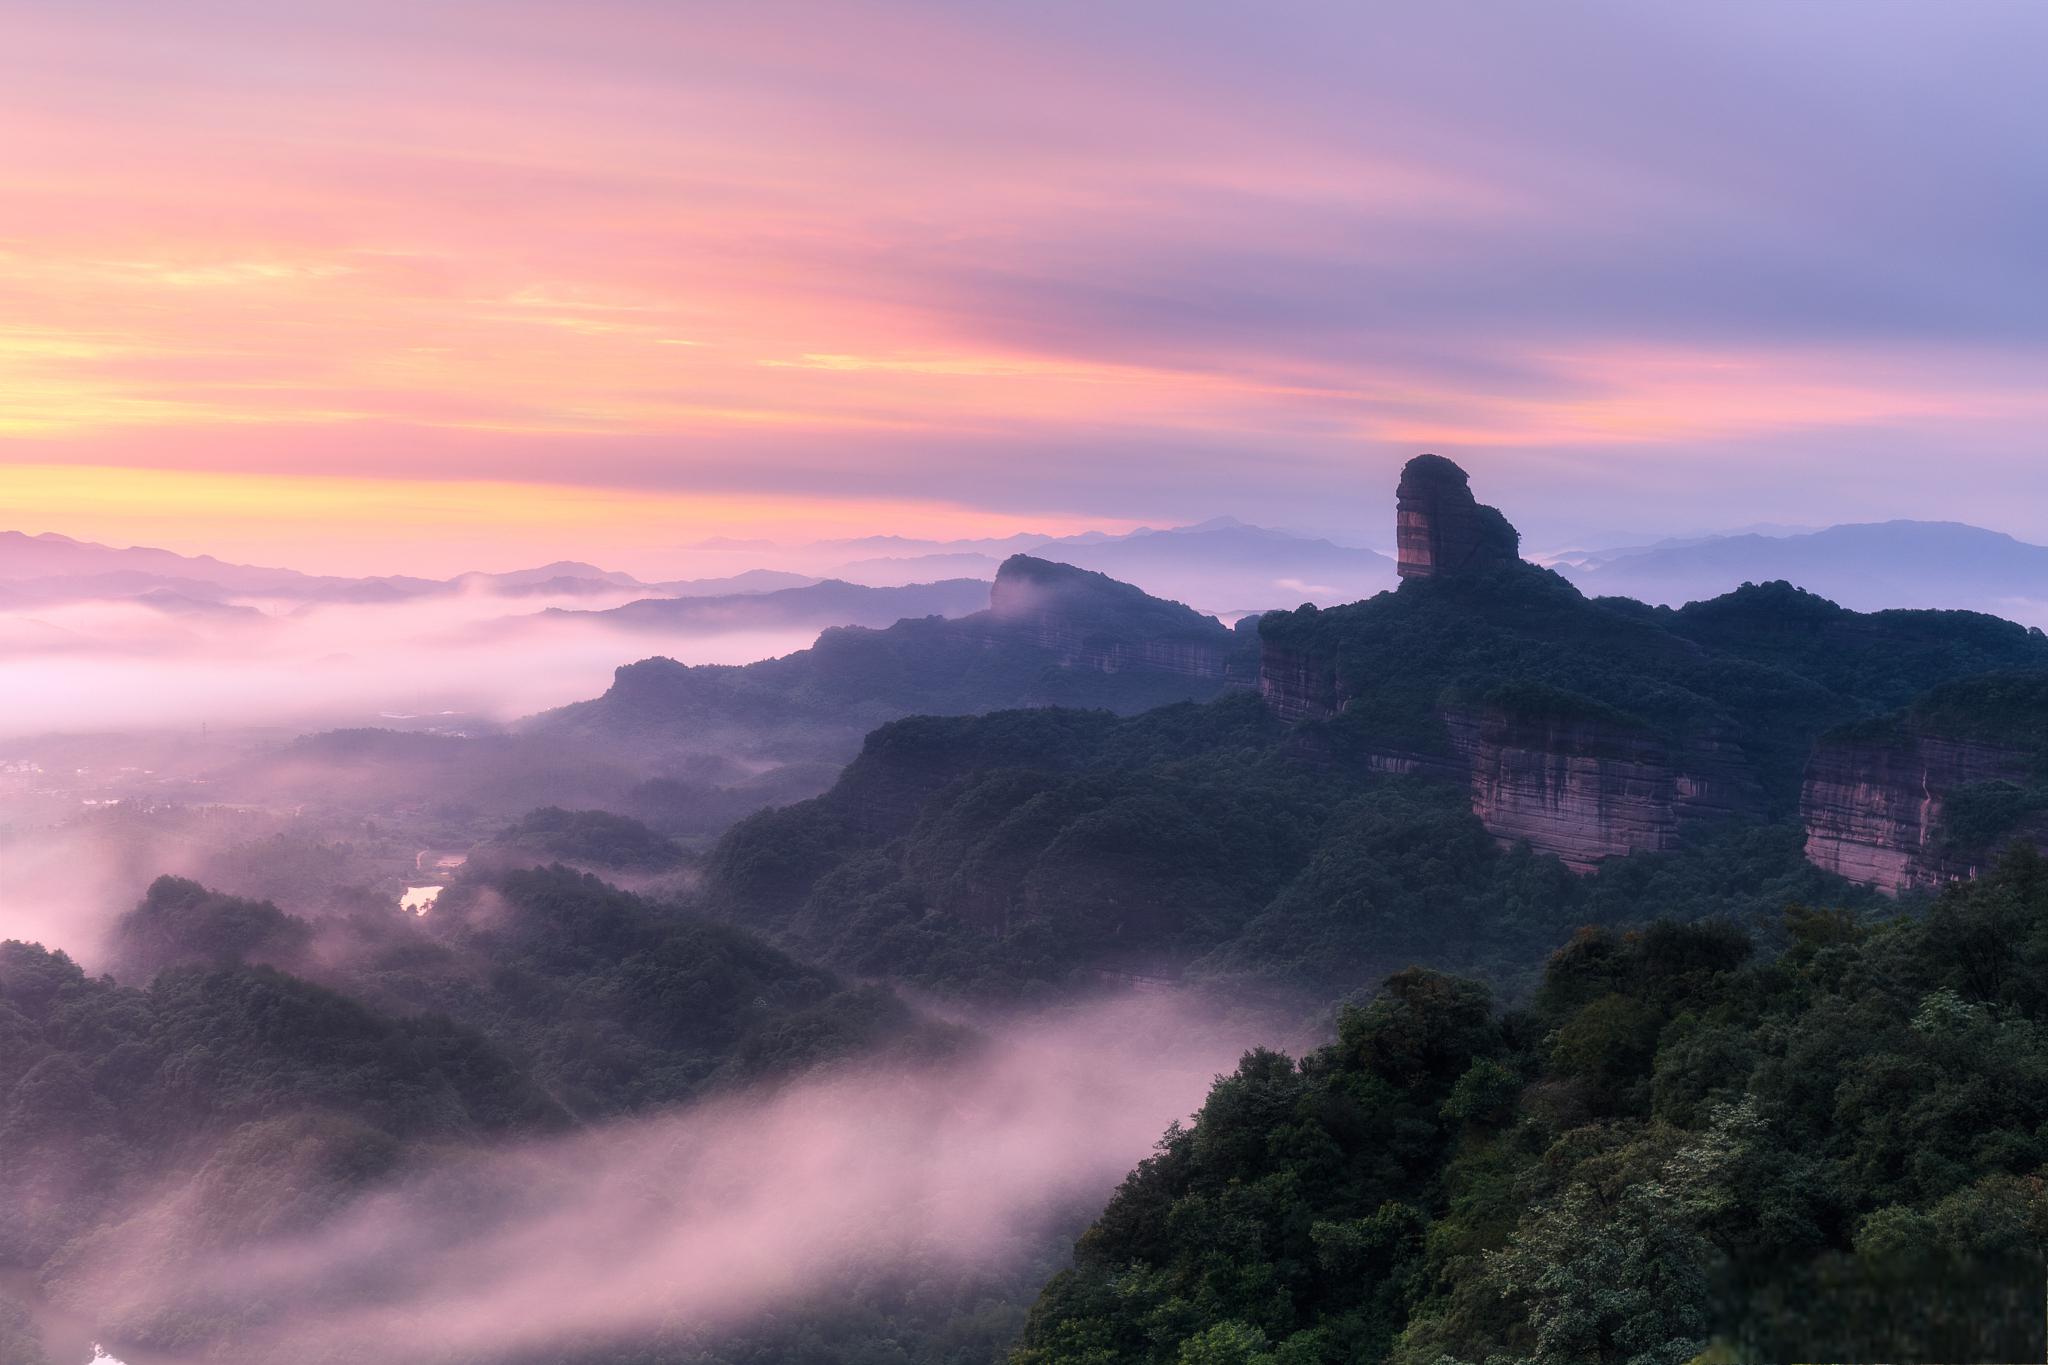 广东丹霞山风景名胜区:自然的神奇与文化的瑰宝 在这个快节奏的现代